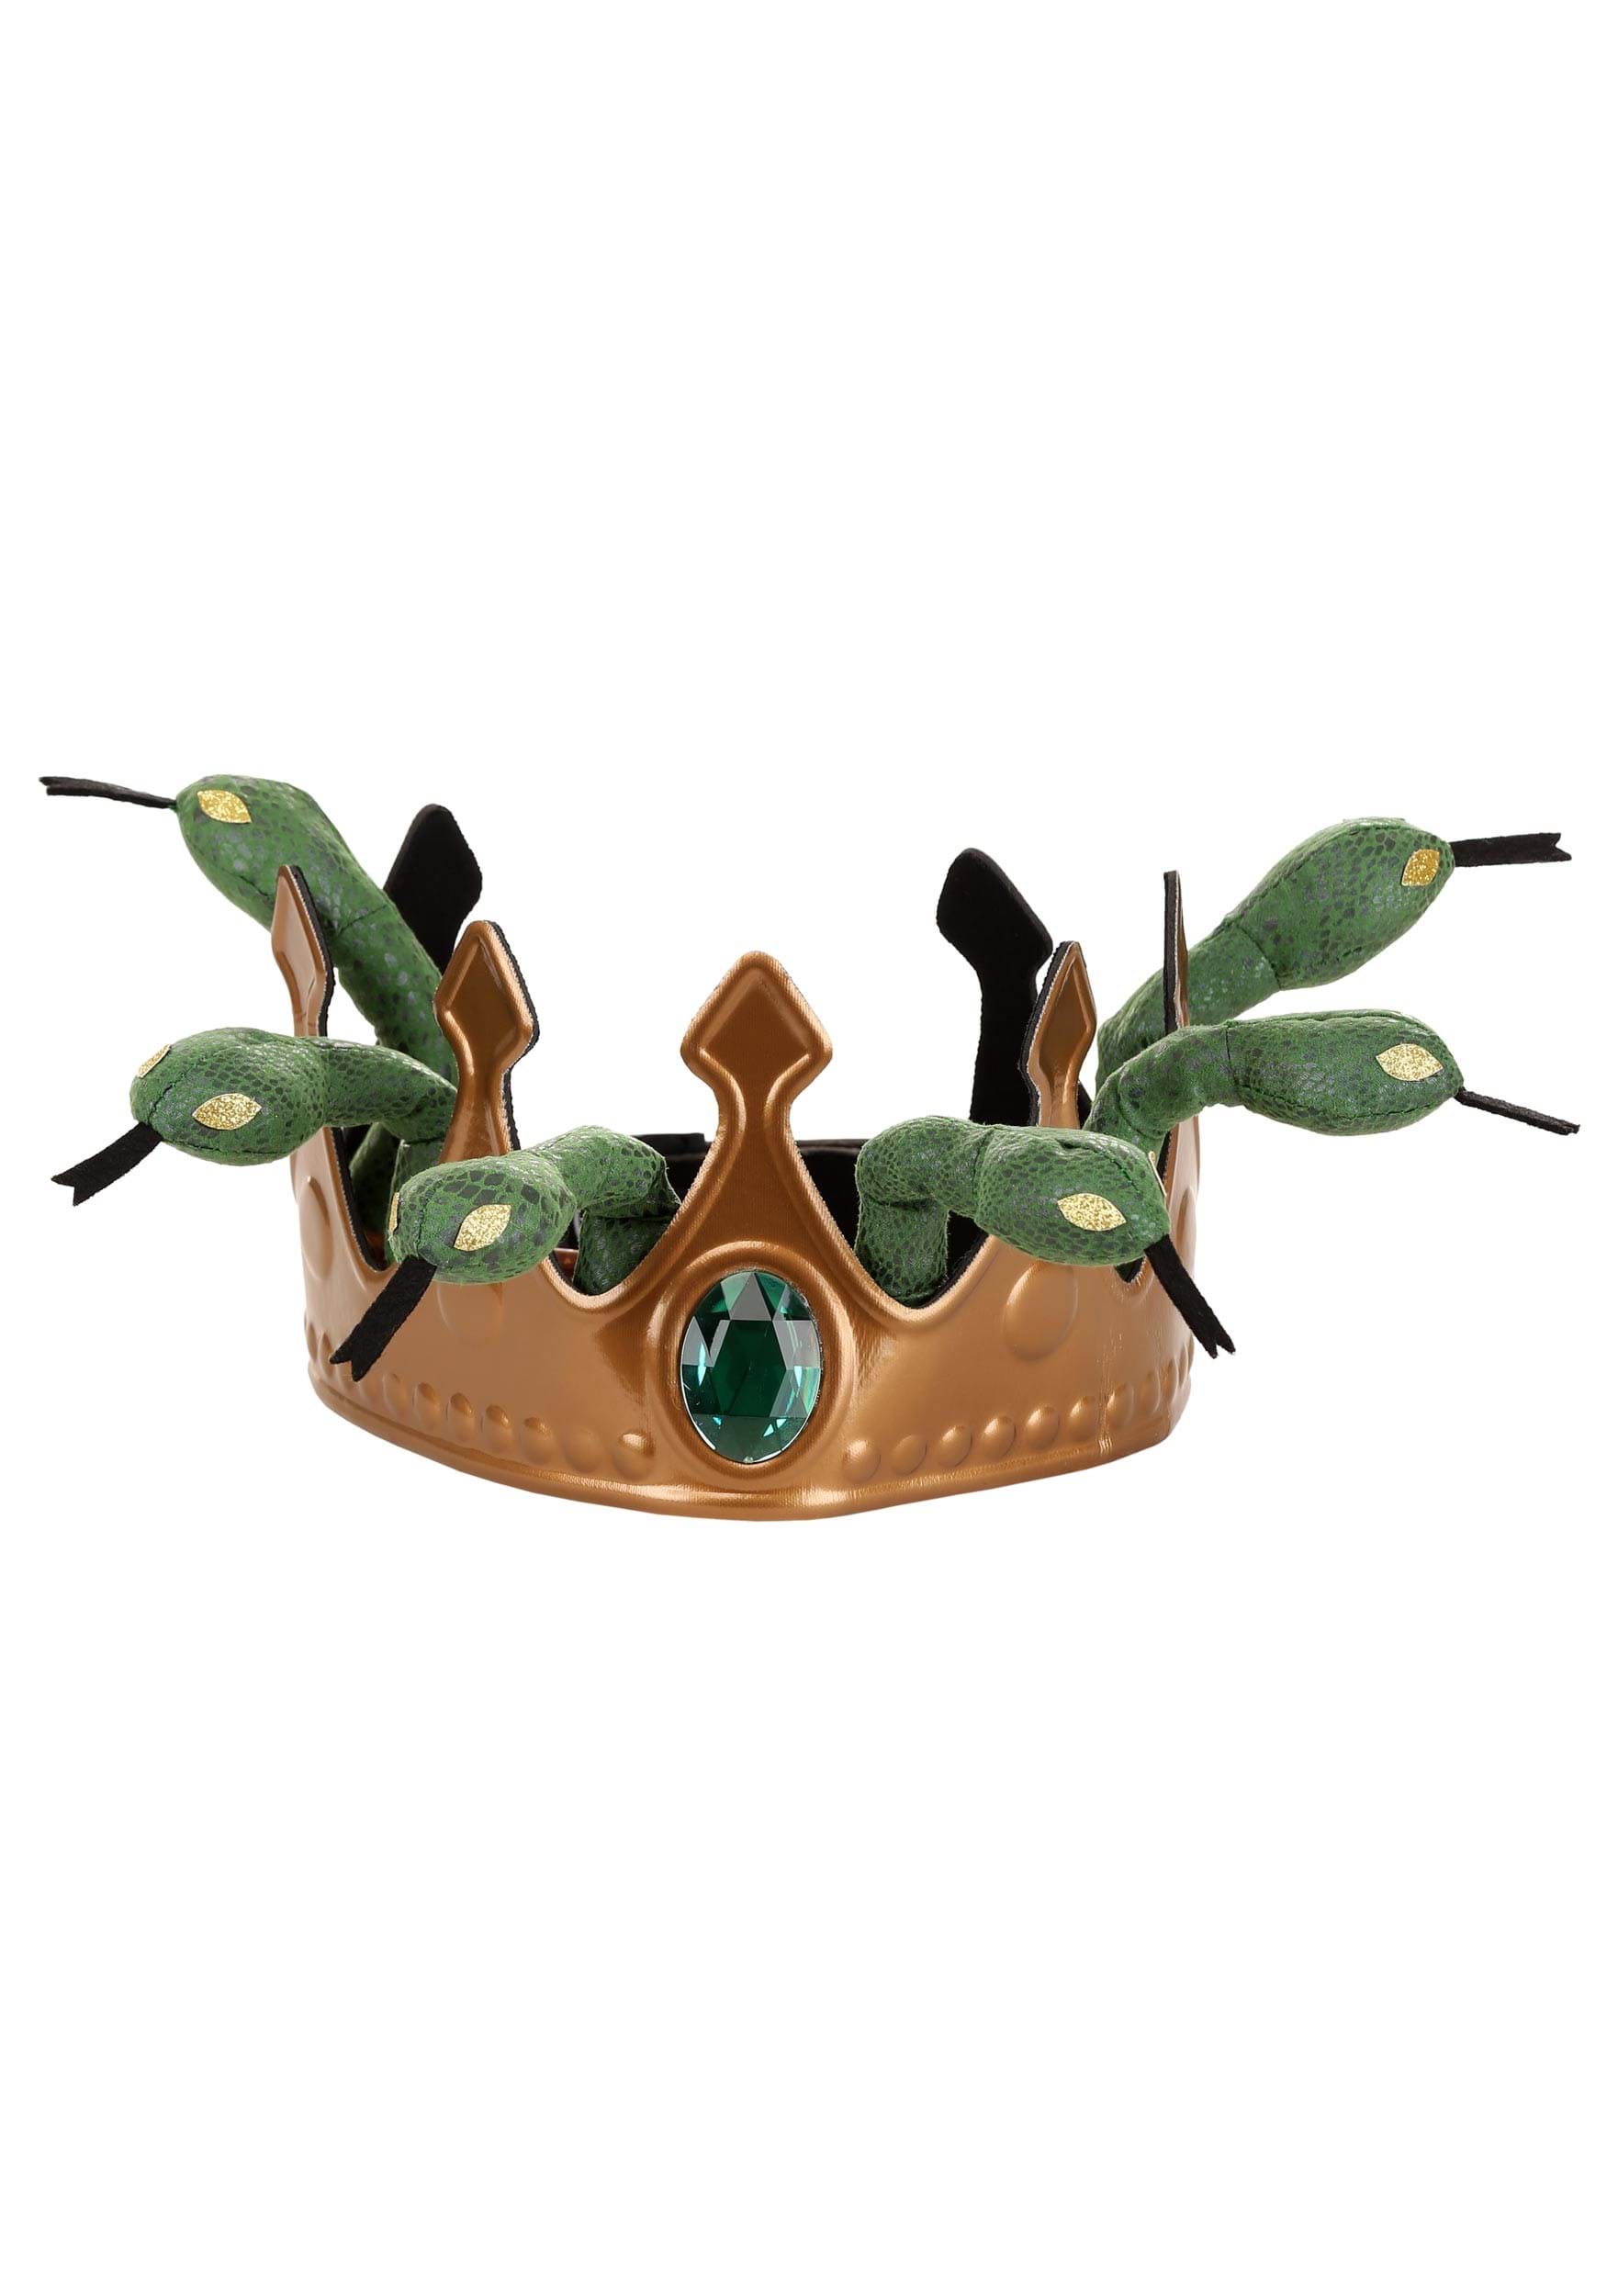 Women's Medusa Snake Costume Crown